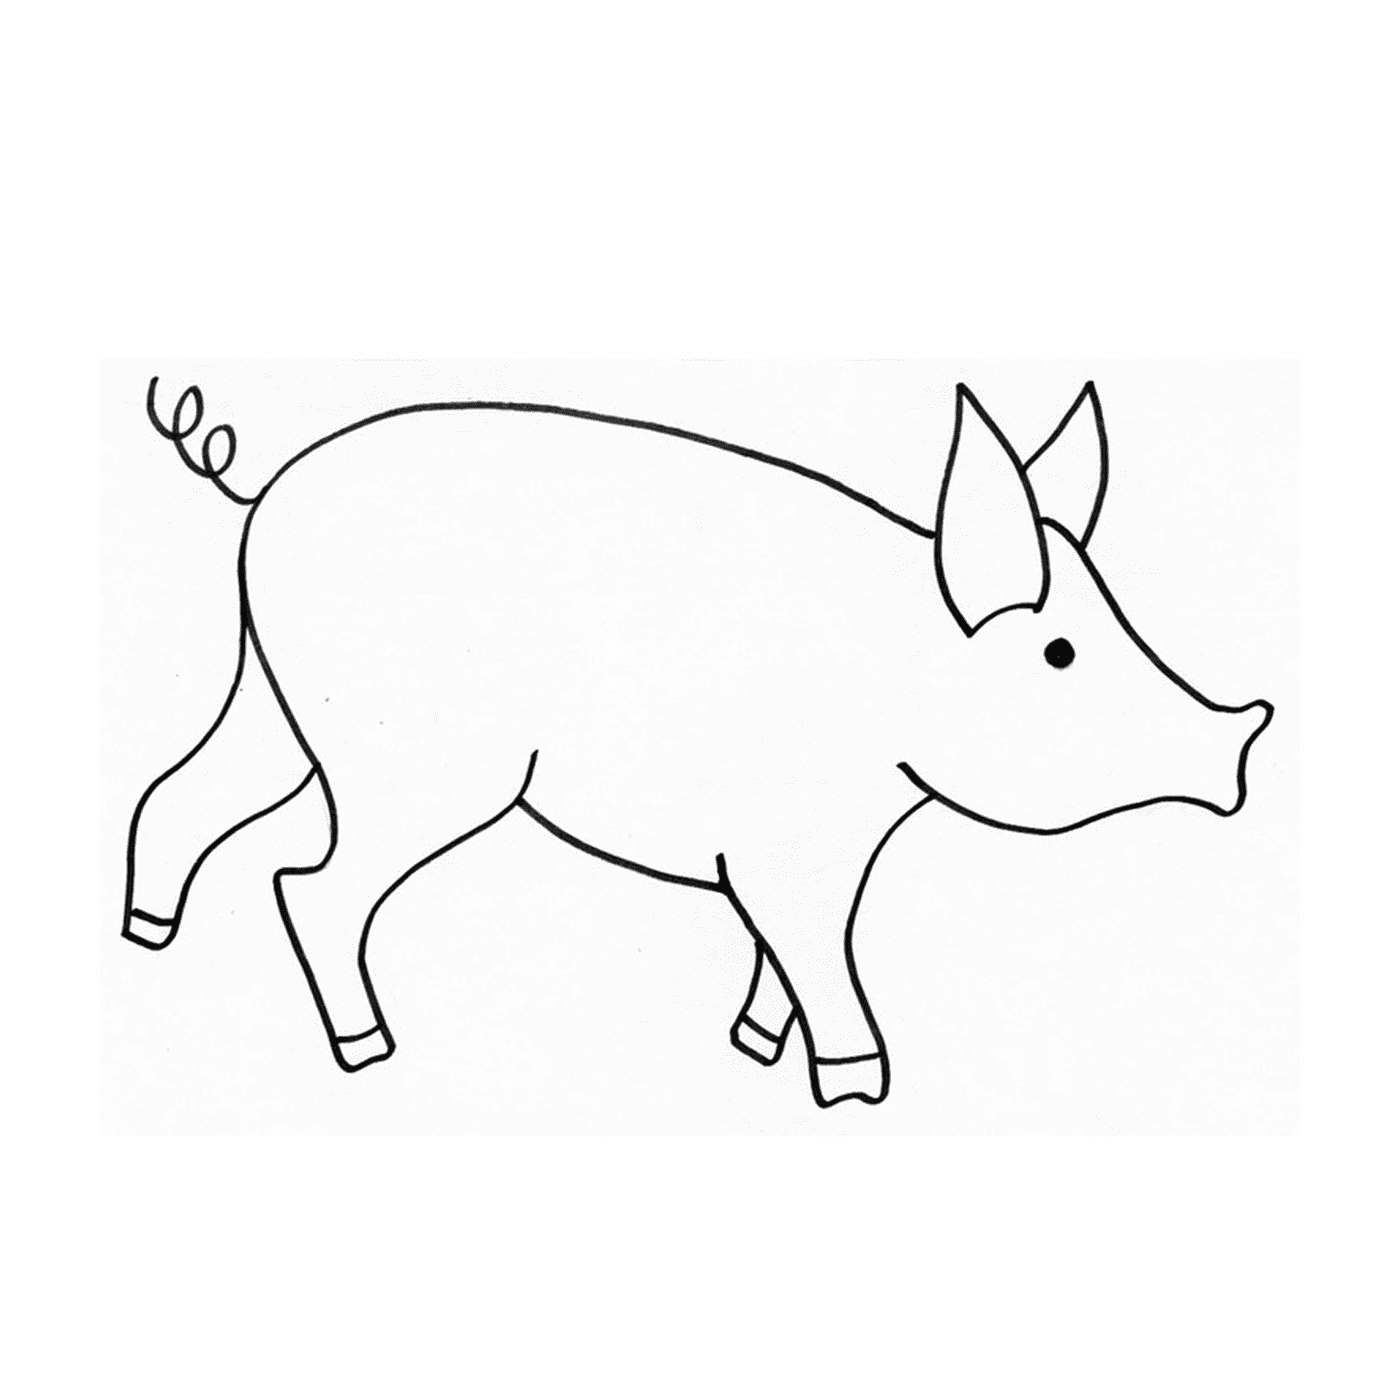  Un maiale nano in stile disegno 